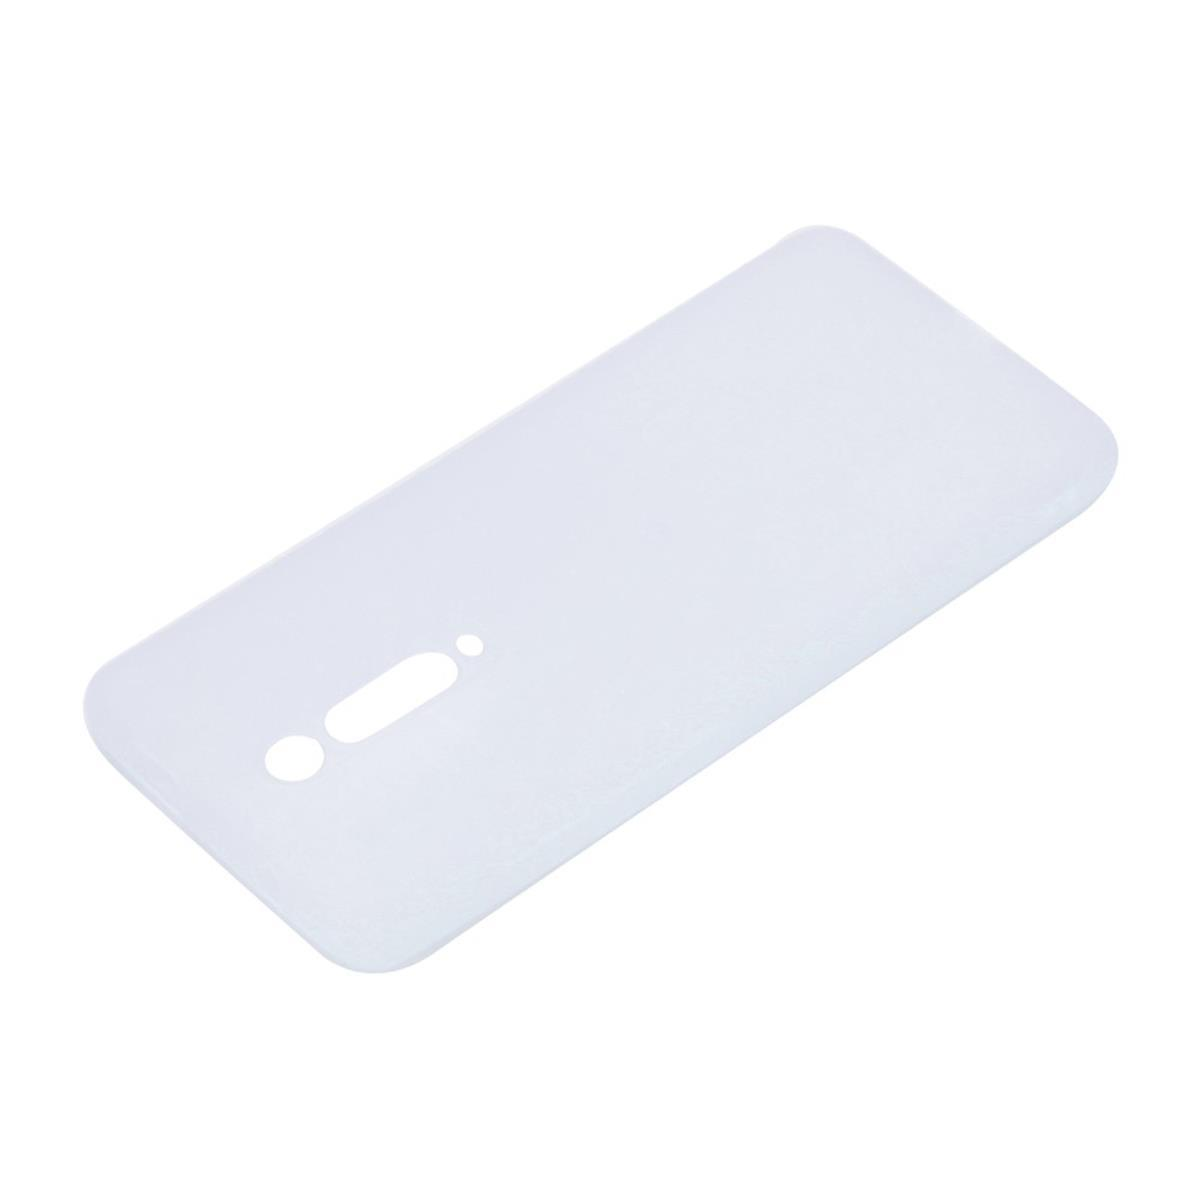 9T/Mi Xiaomi, 9T Handycase Silikon, Backcover, Mi COVERKINGZ Weiß aus Pro,